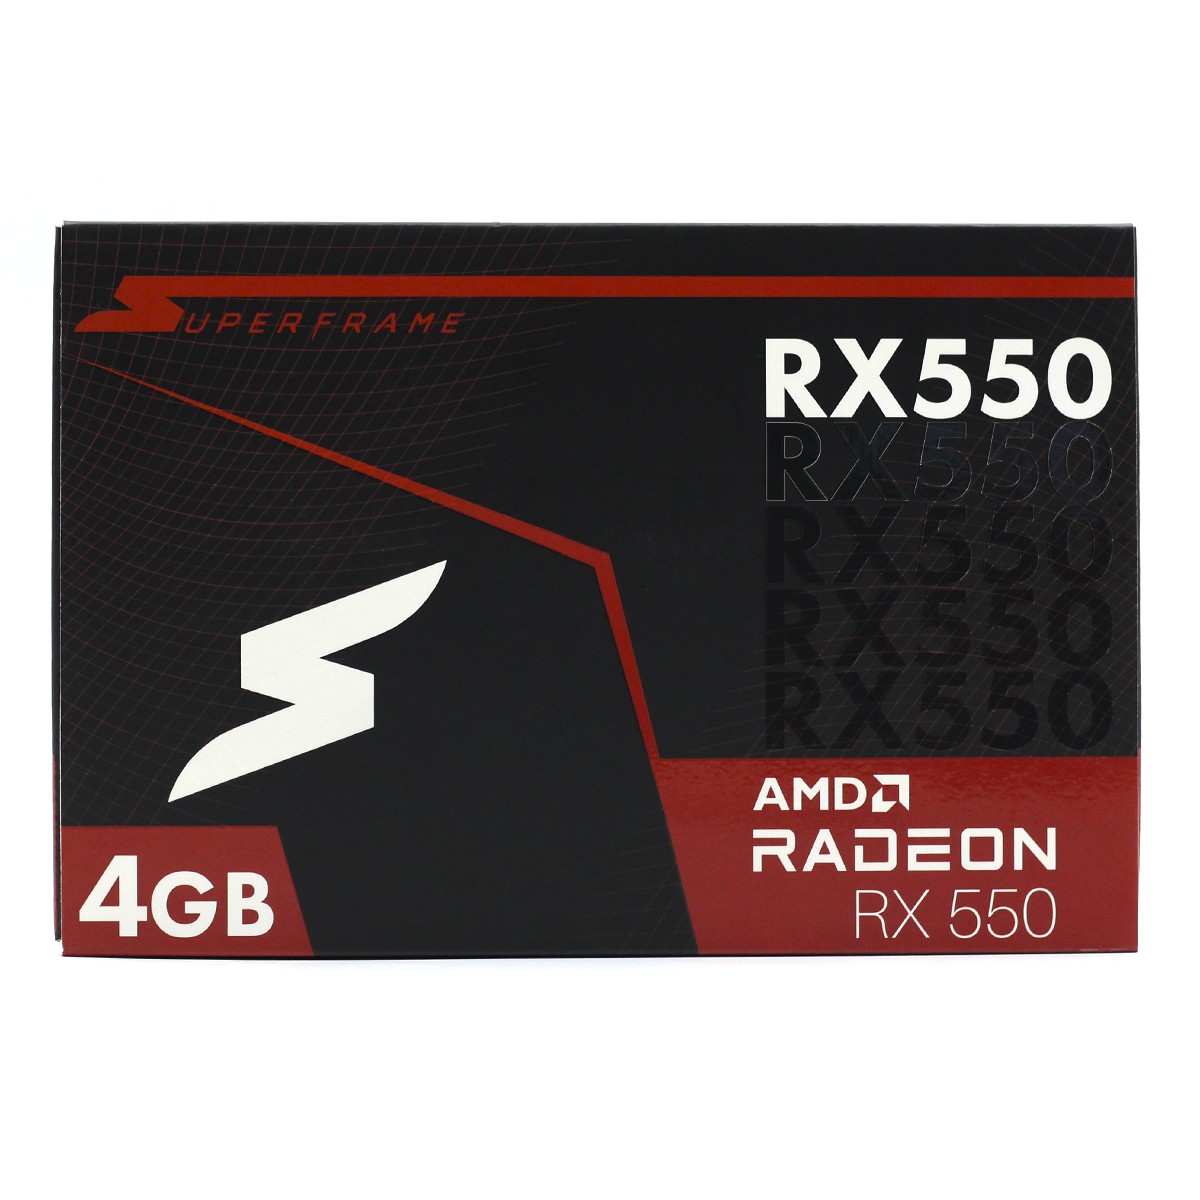 Placa de Vídeo SuperFrame Radeon RX 550 4GB, GDDR5, RX550/4GD5P8DIP